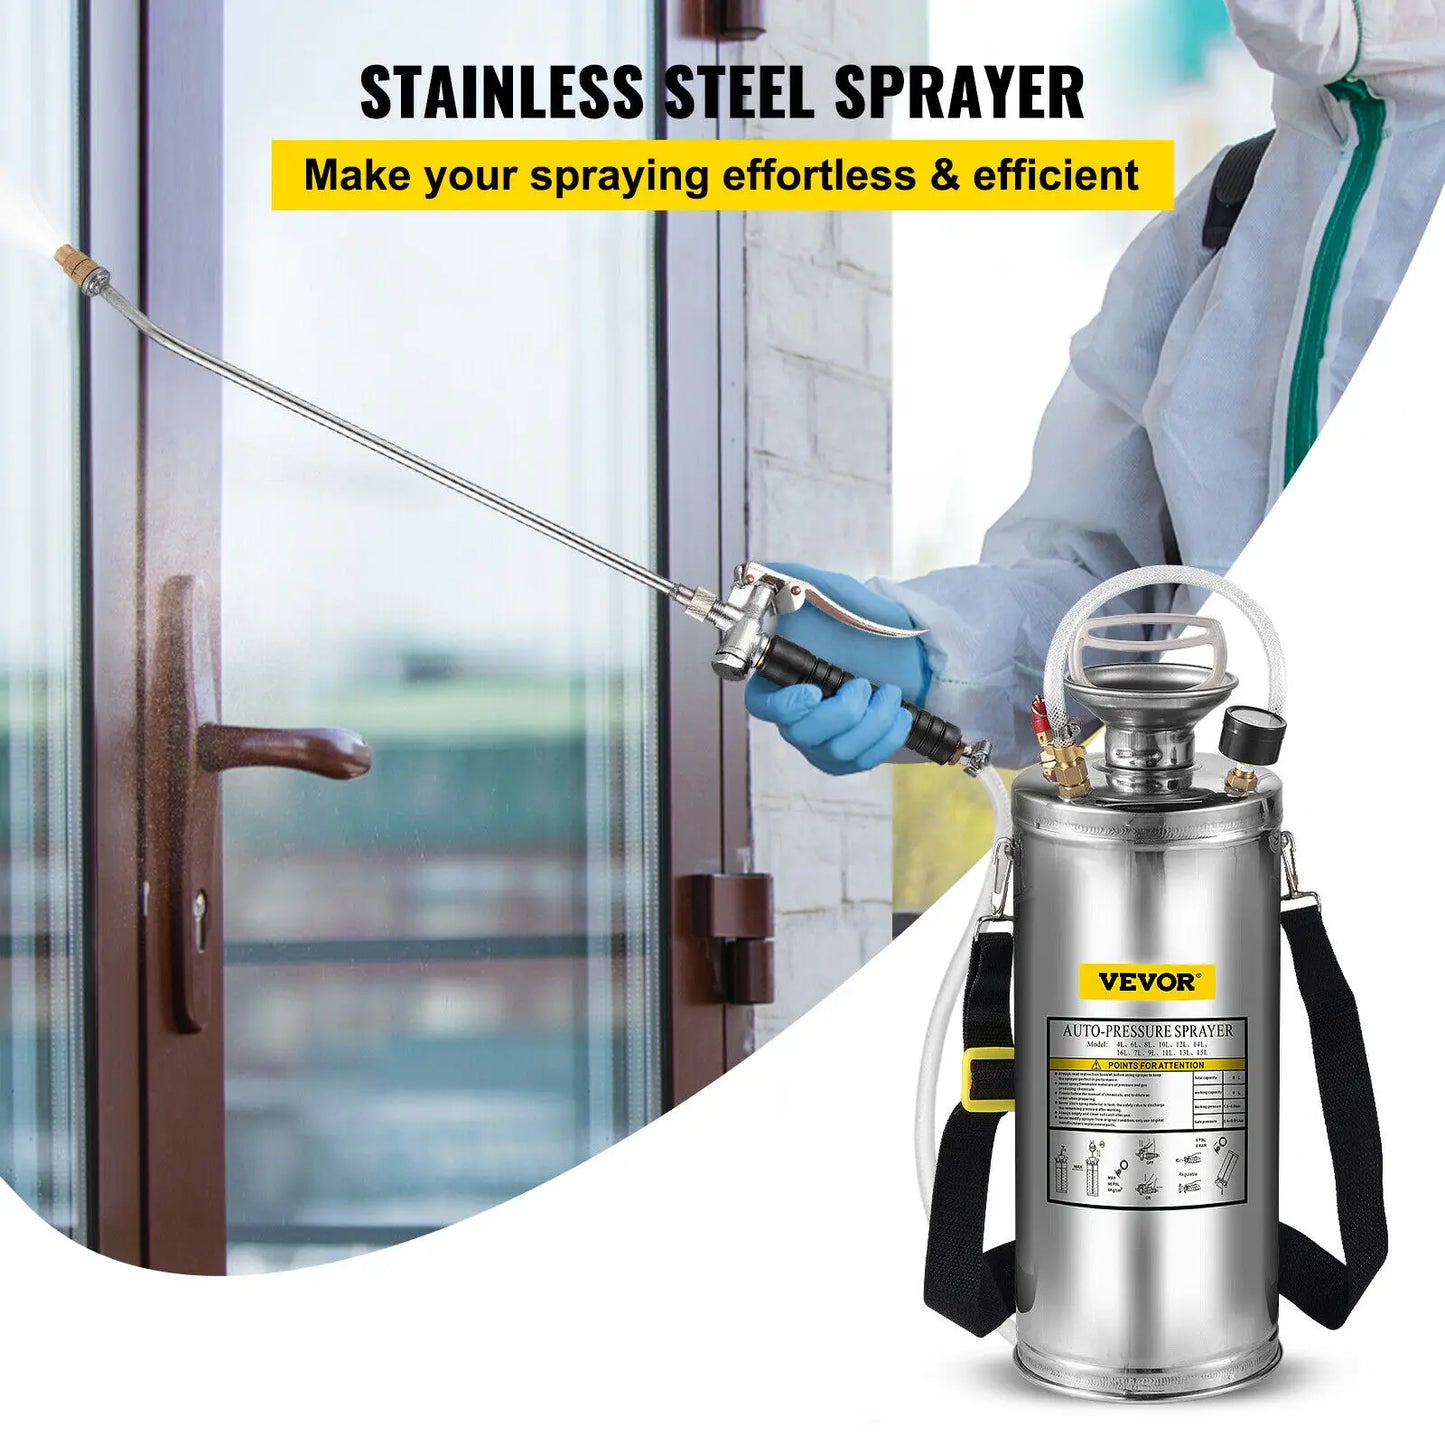 VEVOR Hand Powered Sprayer Stainless Steel Watering Pump
Home Garden Cleaning Sprayer